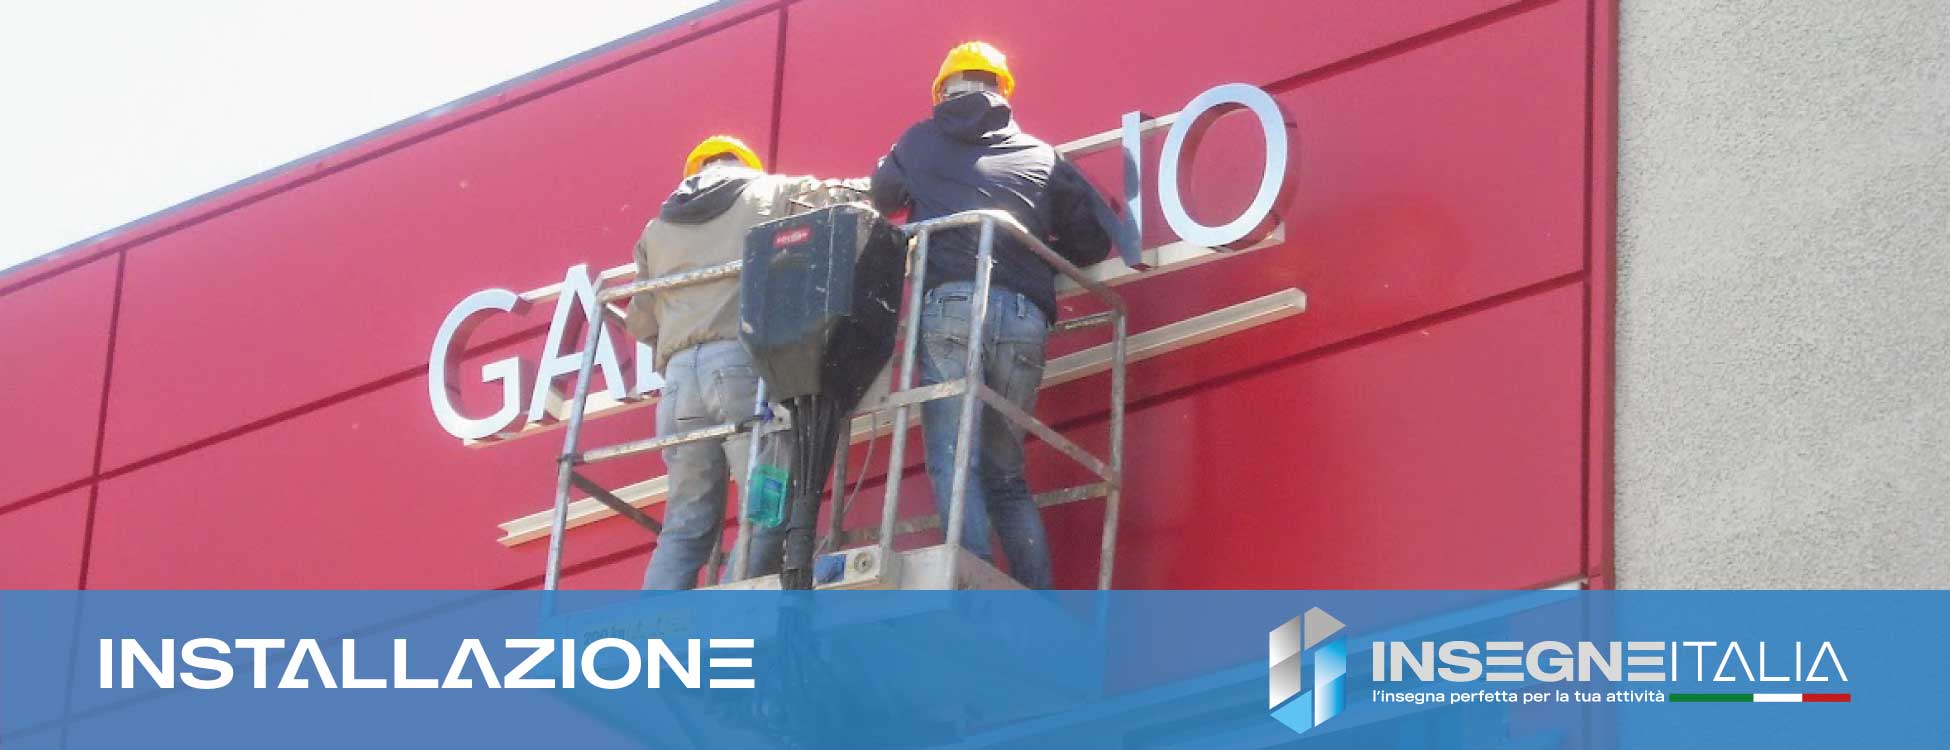 Foto di operai specializzati Insegne Italia durante la installazione di un allestimento pubblicitario sulla facciata di un negozio